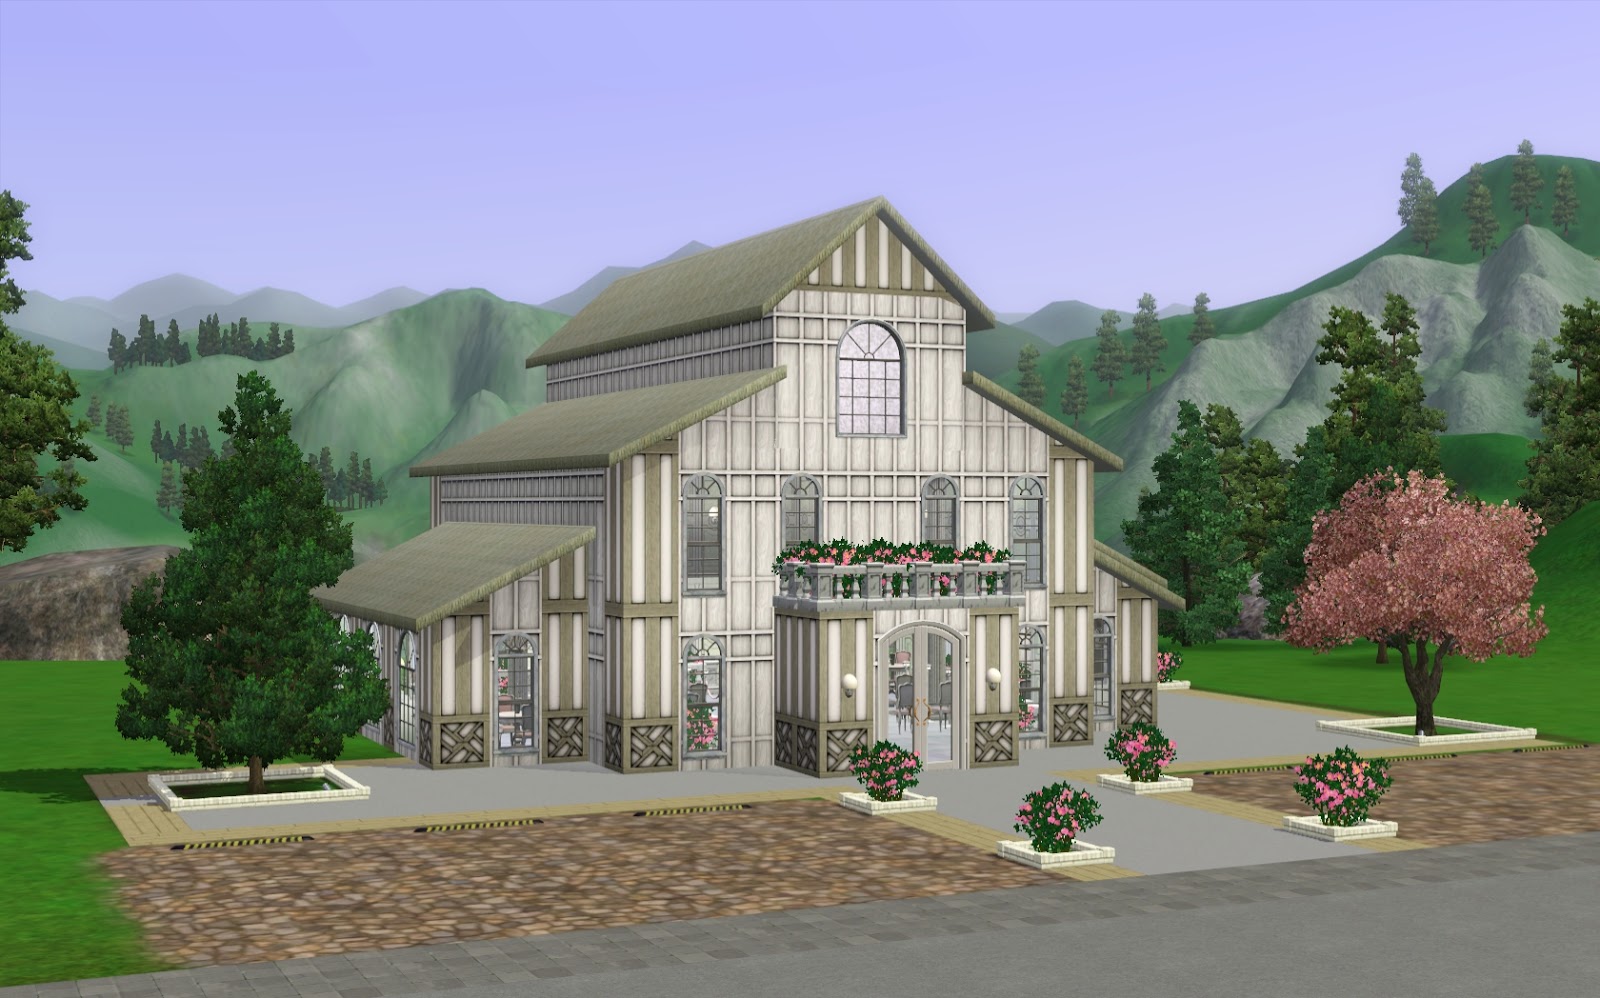 Sims 3 wedding venue image